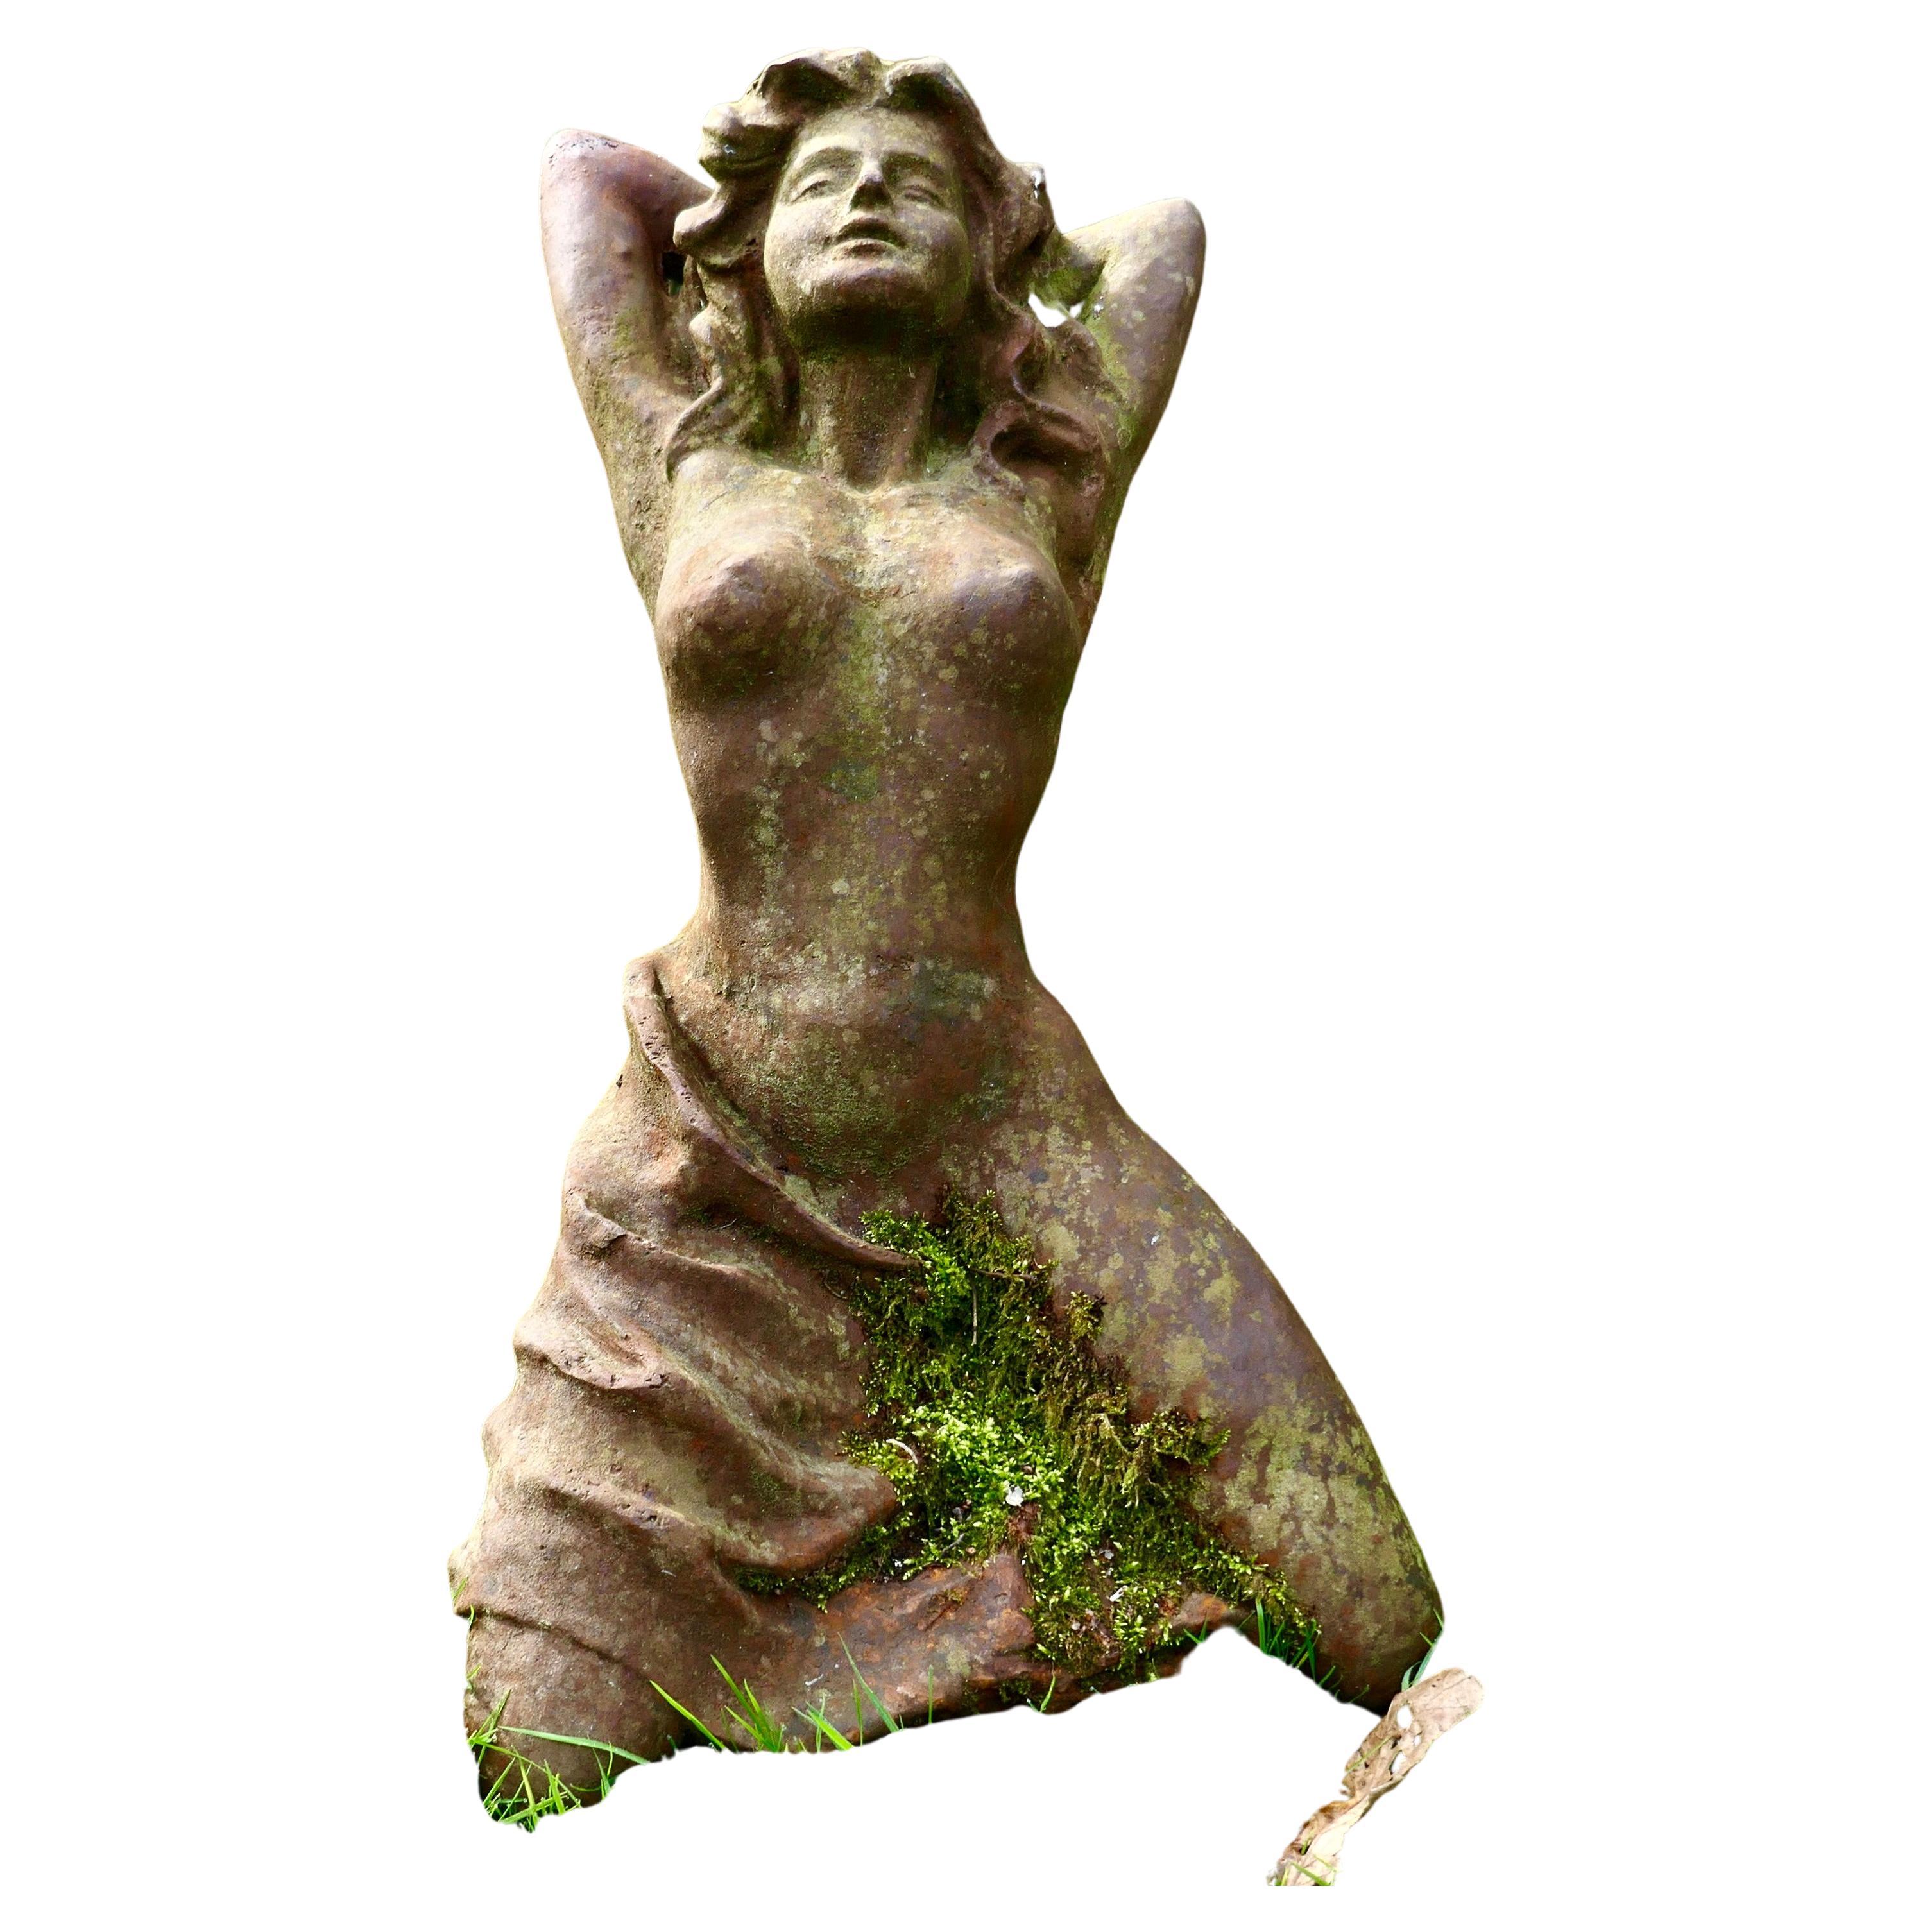 Verwitterte weibliche Statue einer nackten Figur, die schamlos ist